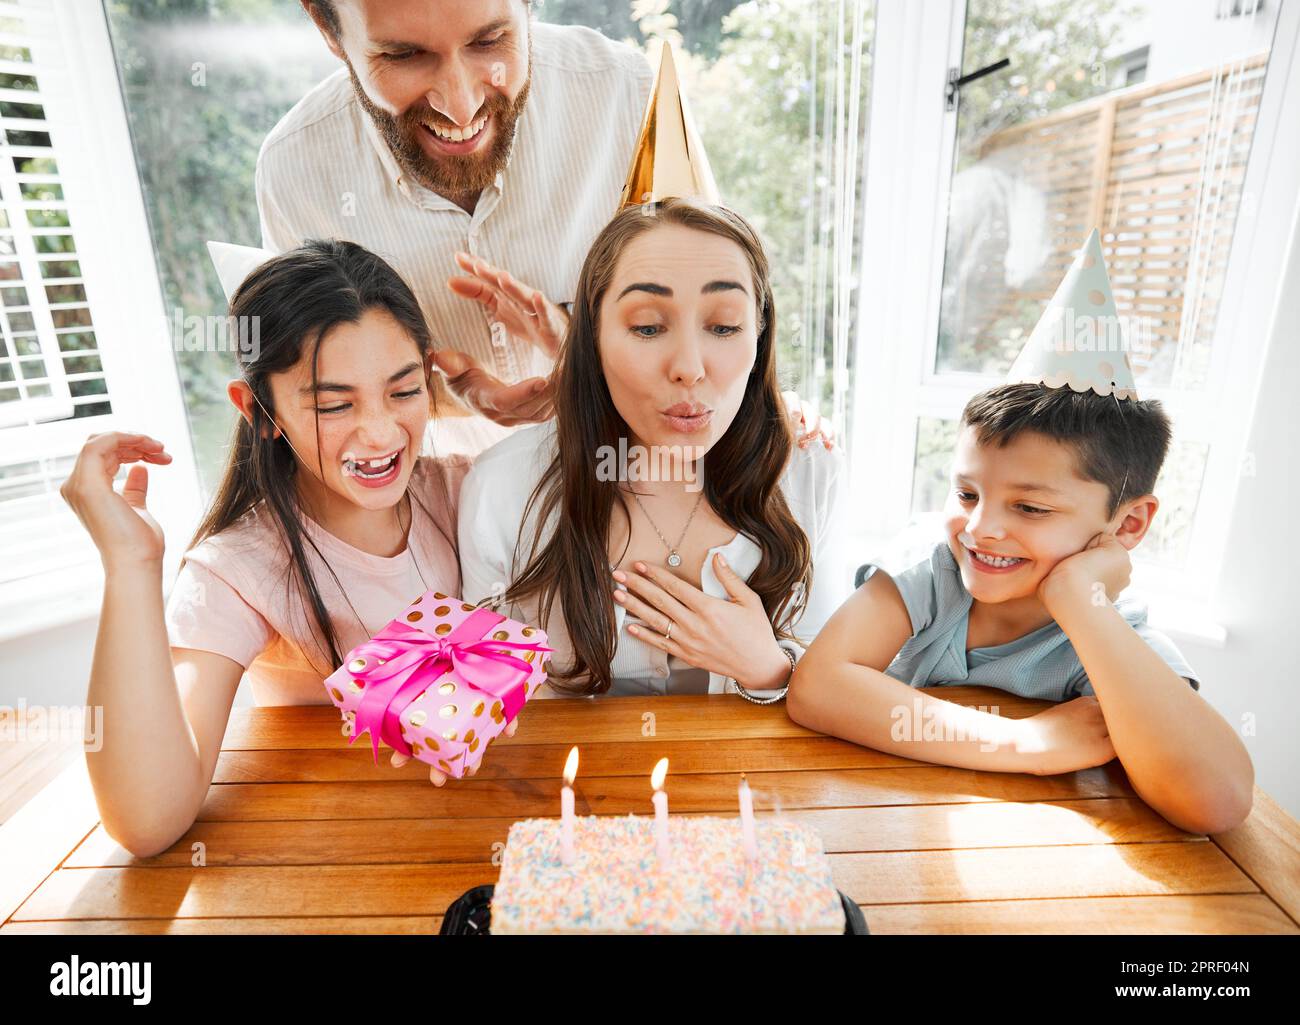 Geburtstag, Familie und Feier mit einer Frau, die die Kerzen auf ihren Kuchen bläst. Ehemann und Kinder verwöhnen mom und sorgen dafür, dass sie sich an ihrem besonderen Muttertag wohlfühlt, während sie zu Hause eine Party feiern Stockfoto